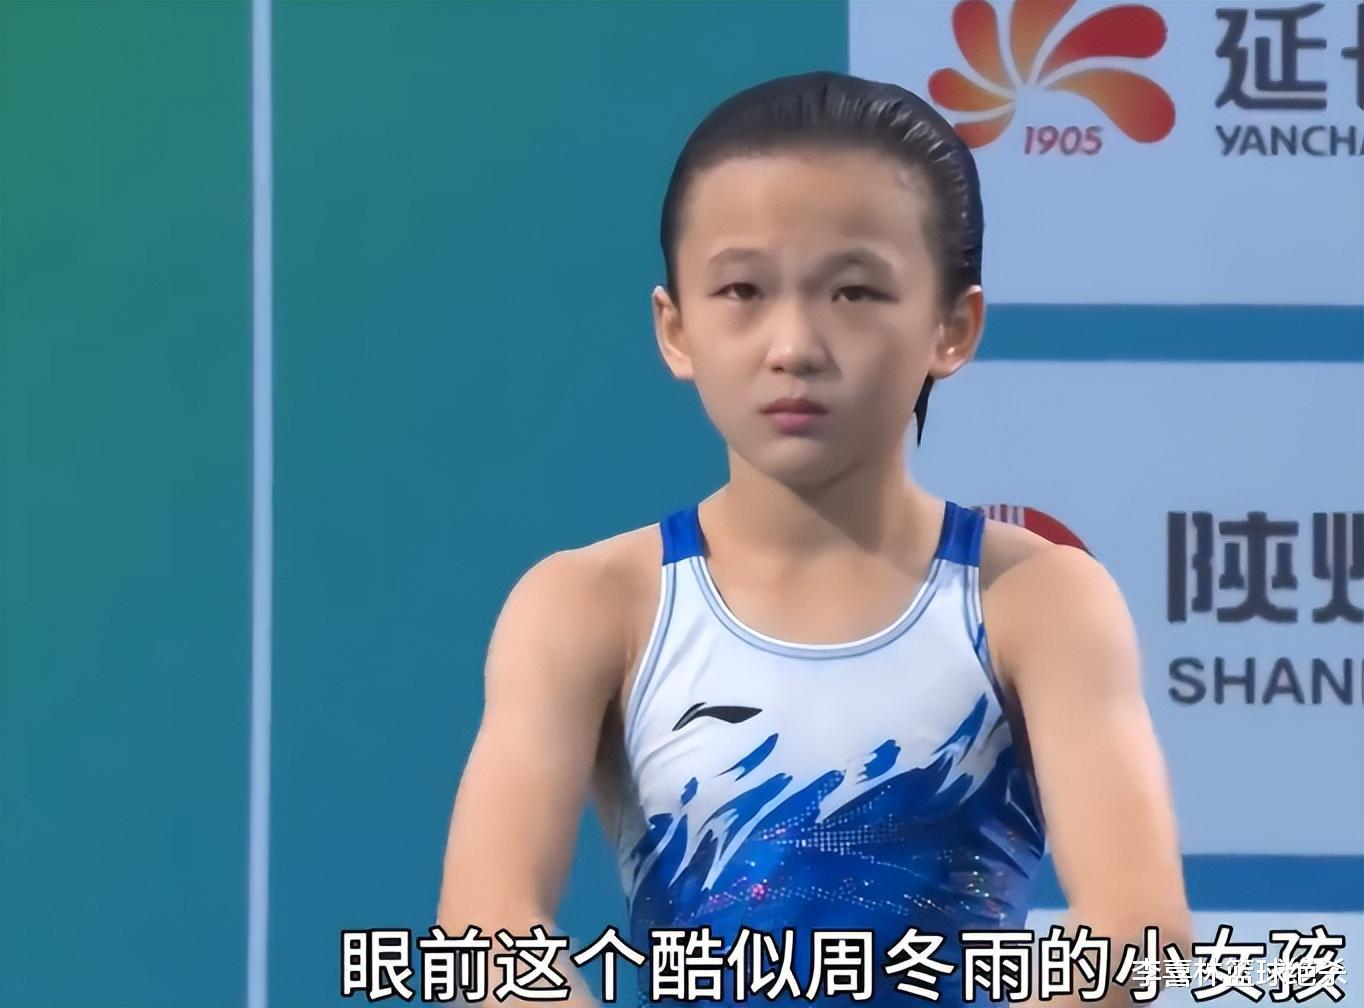 下一个全红婵！中国跳水又出14岁天才：神似周冬雨，技术像陈芋汐(2)